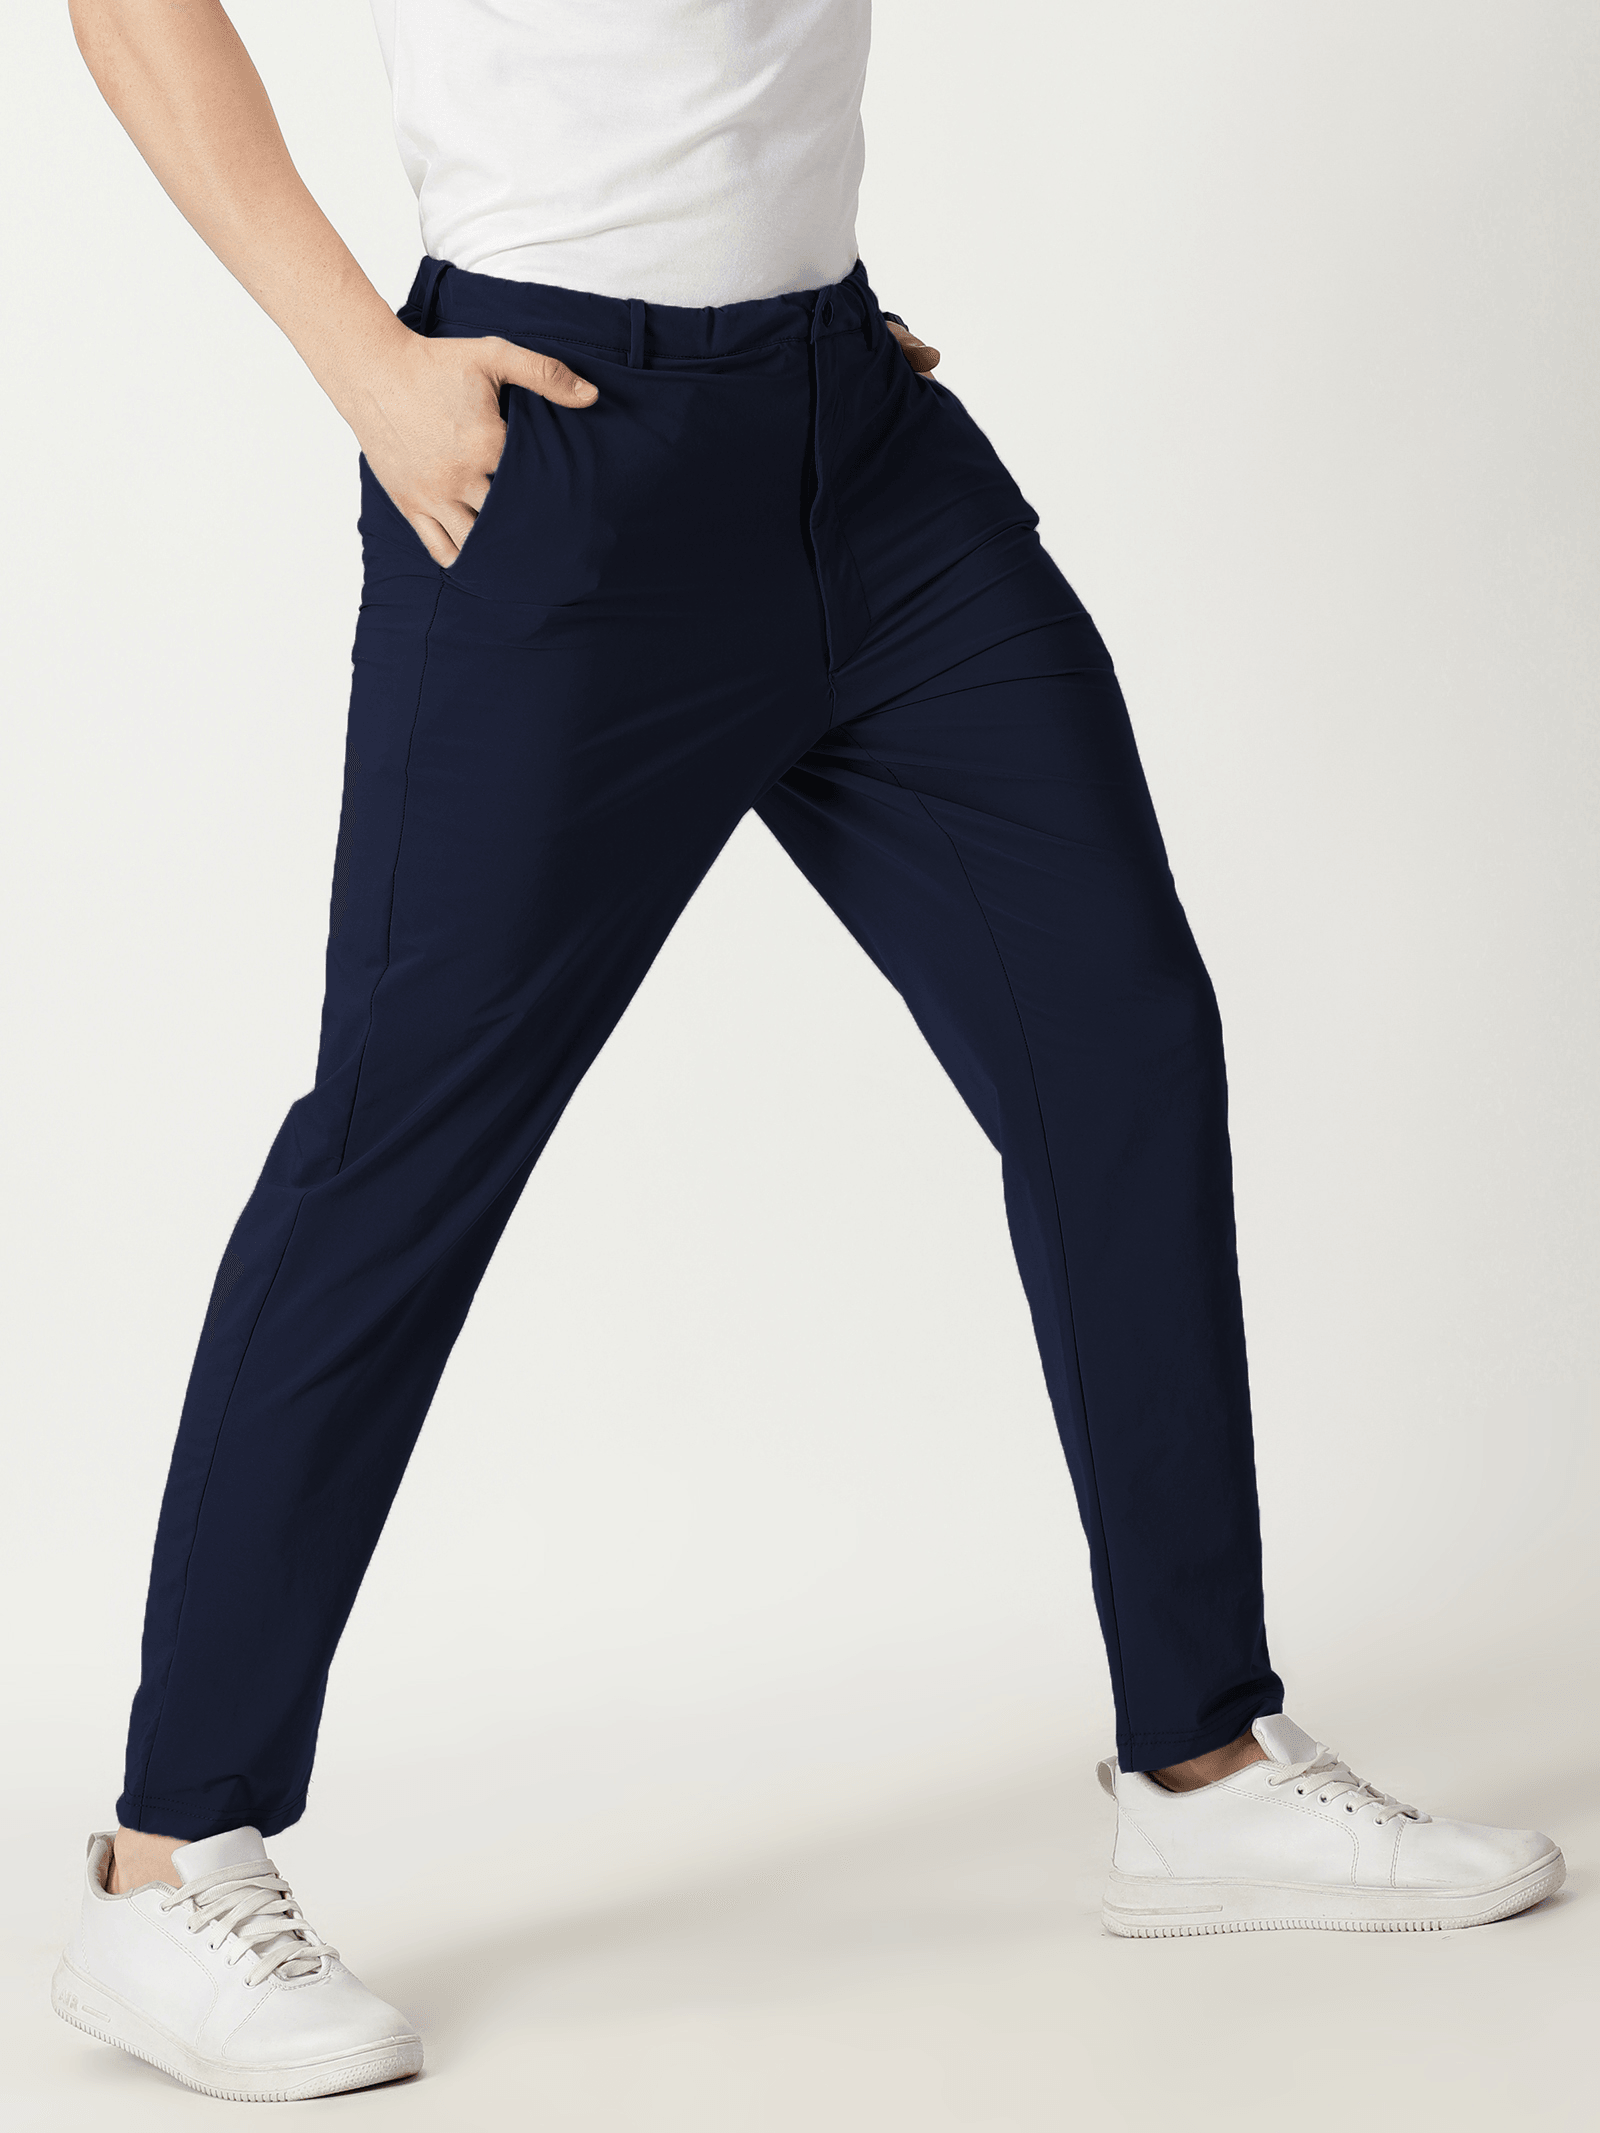 Wholesale Blue Street Wear Jogger Jeans – Tradyl